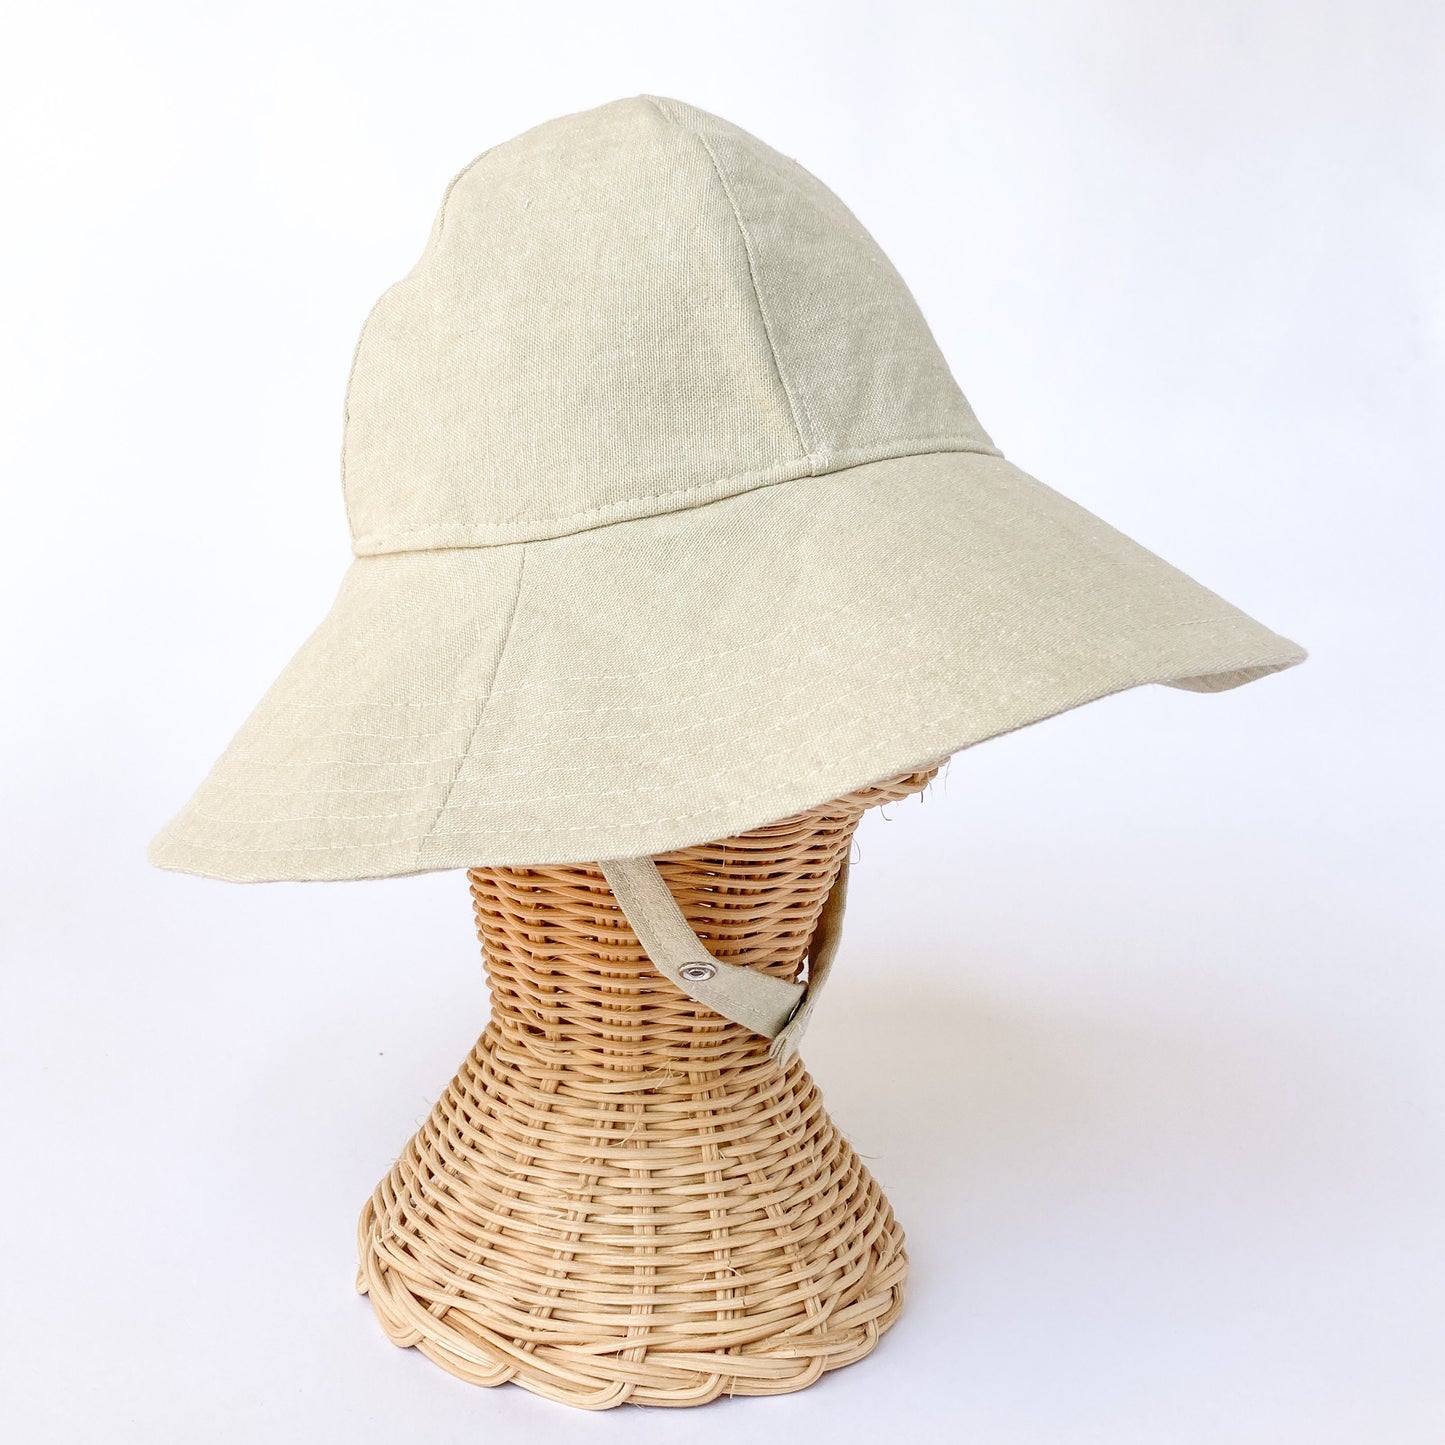 Natural Baby Hat, Baby Beach Hat, Toddler Summer Hat, Gender Neutral Baby Hat, Baby Sun Hats, Linen Baby Hat, Beach Sun Hat, Boho Baby Hat